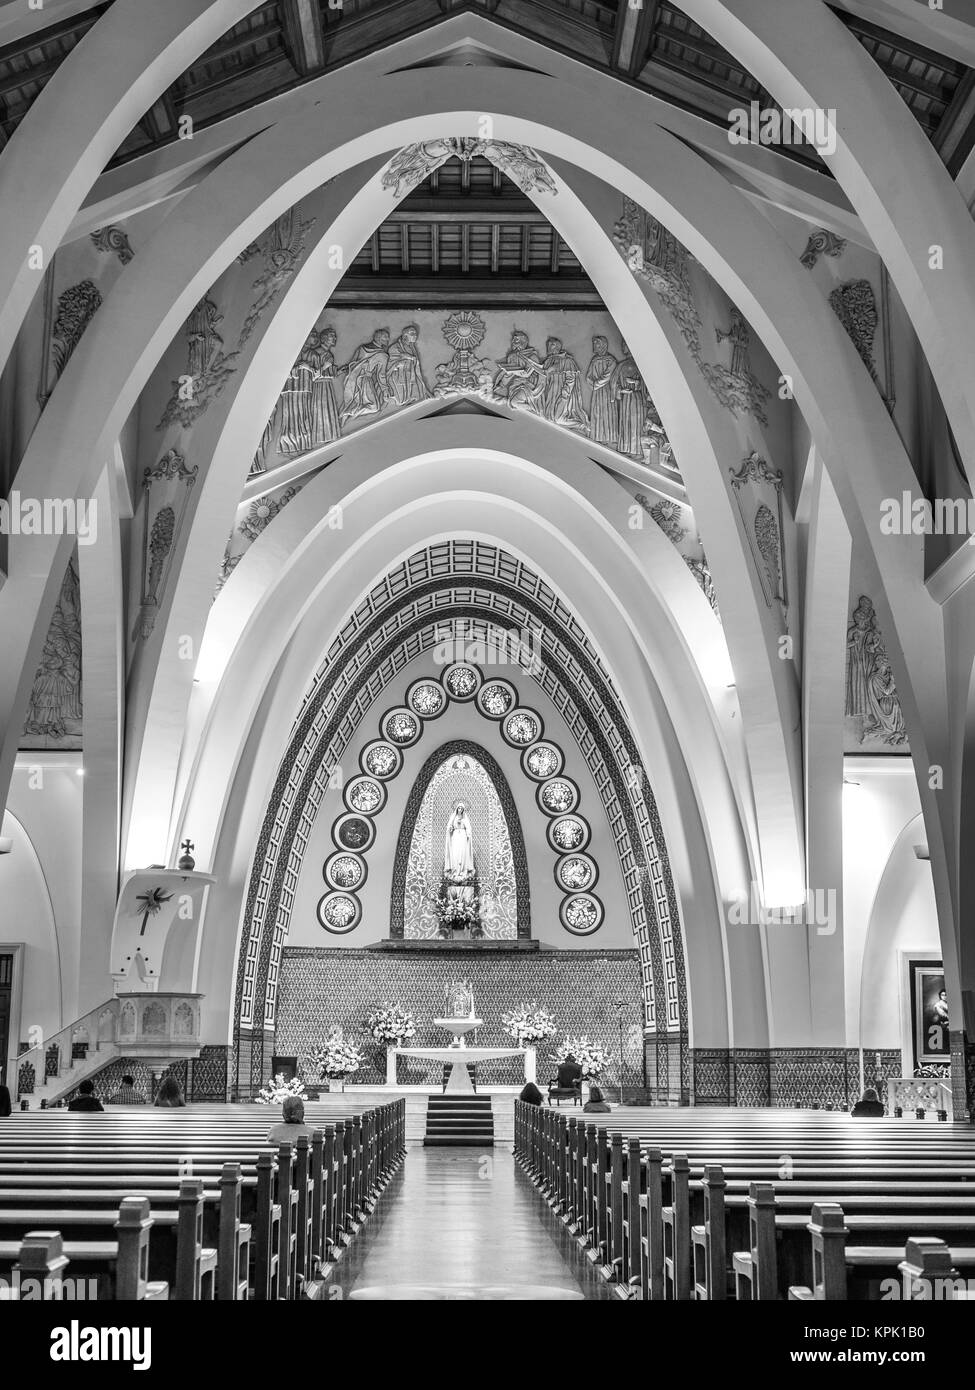 LIMA, PERU - 17. SEPTEMBER 2015. Die Kirche der Jungfrau Maria Fatima befindet sich im Stadtteil Miraflores und wurde 1965 errichtet. Stockfoto